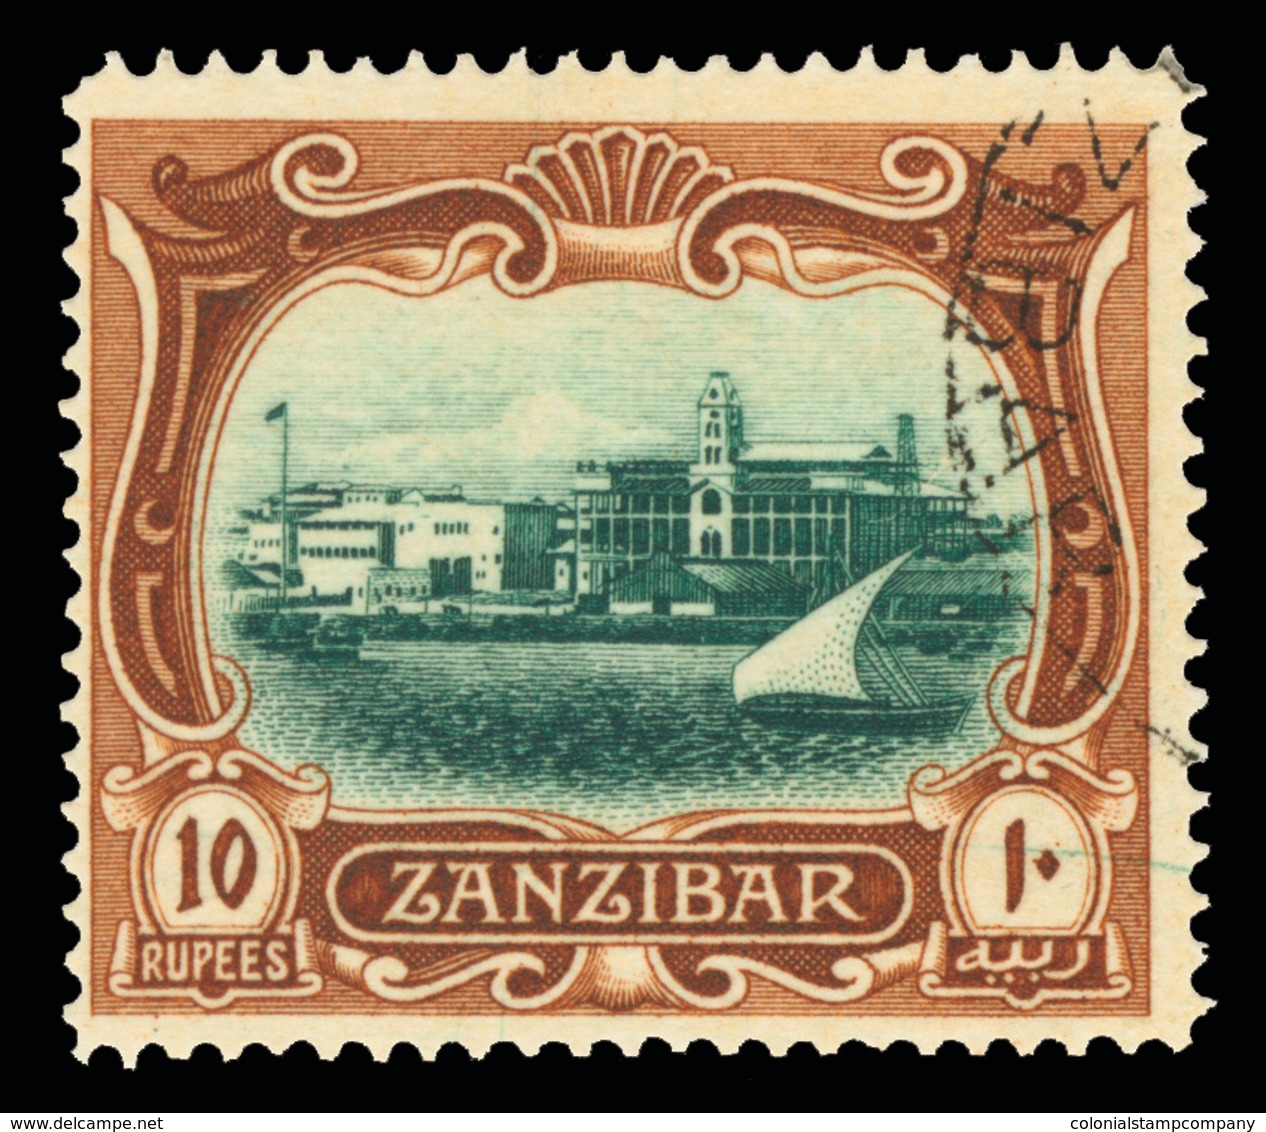 O Zanzibar - Lot No.1173 - Zanzibar (...-1963)